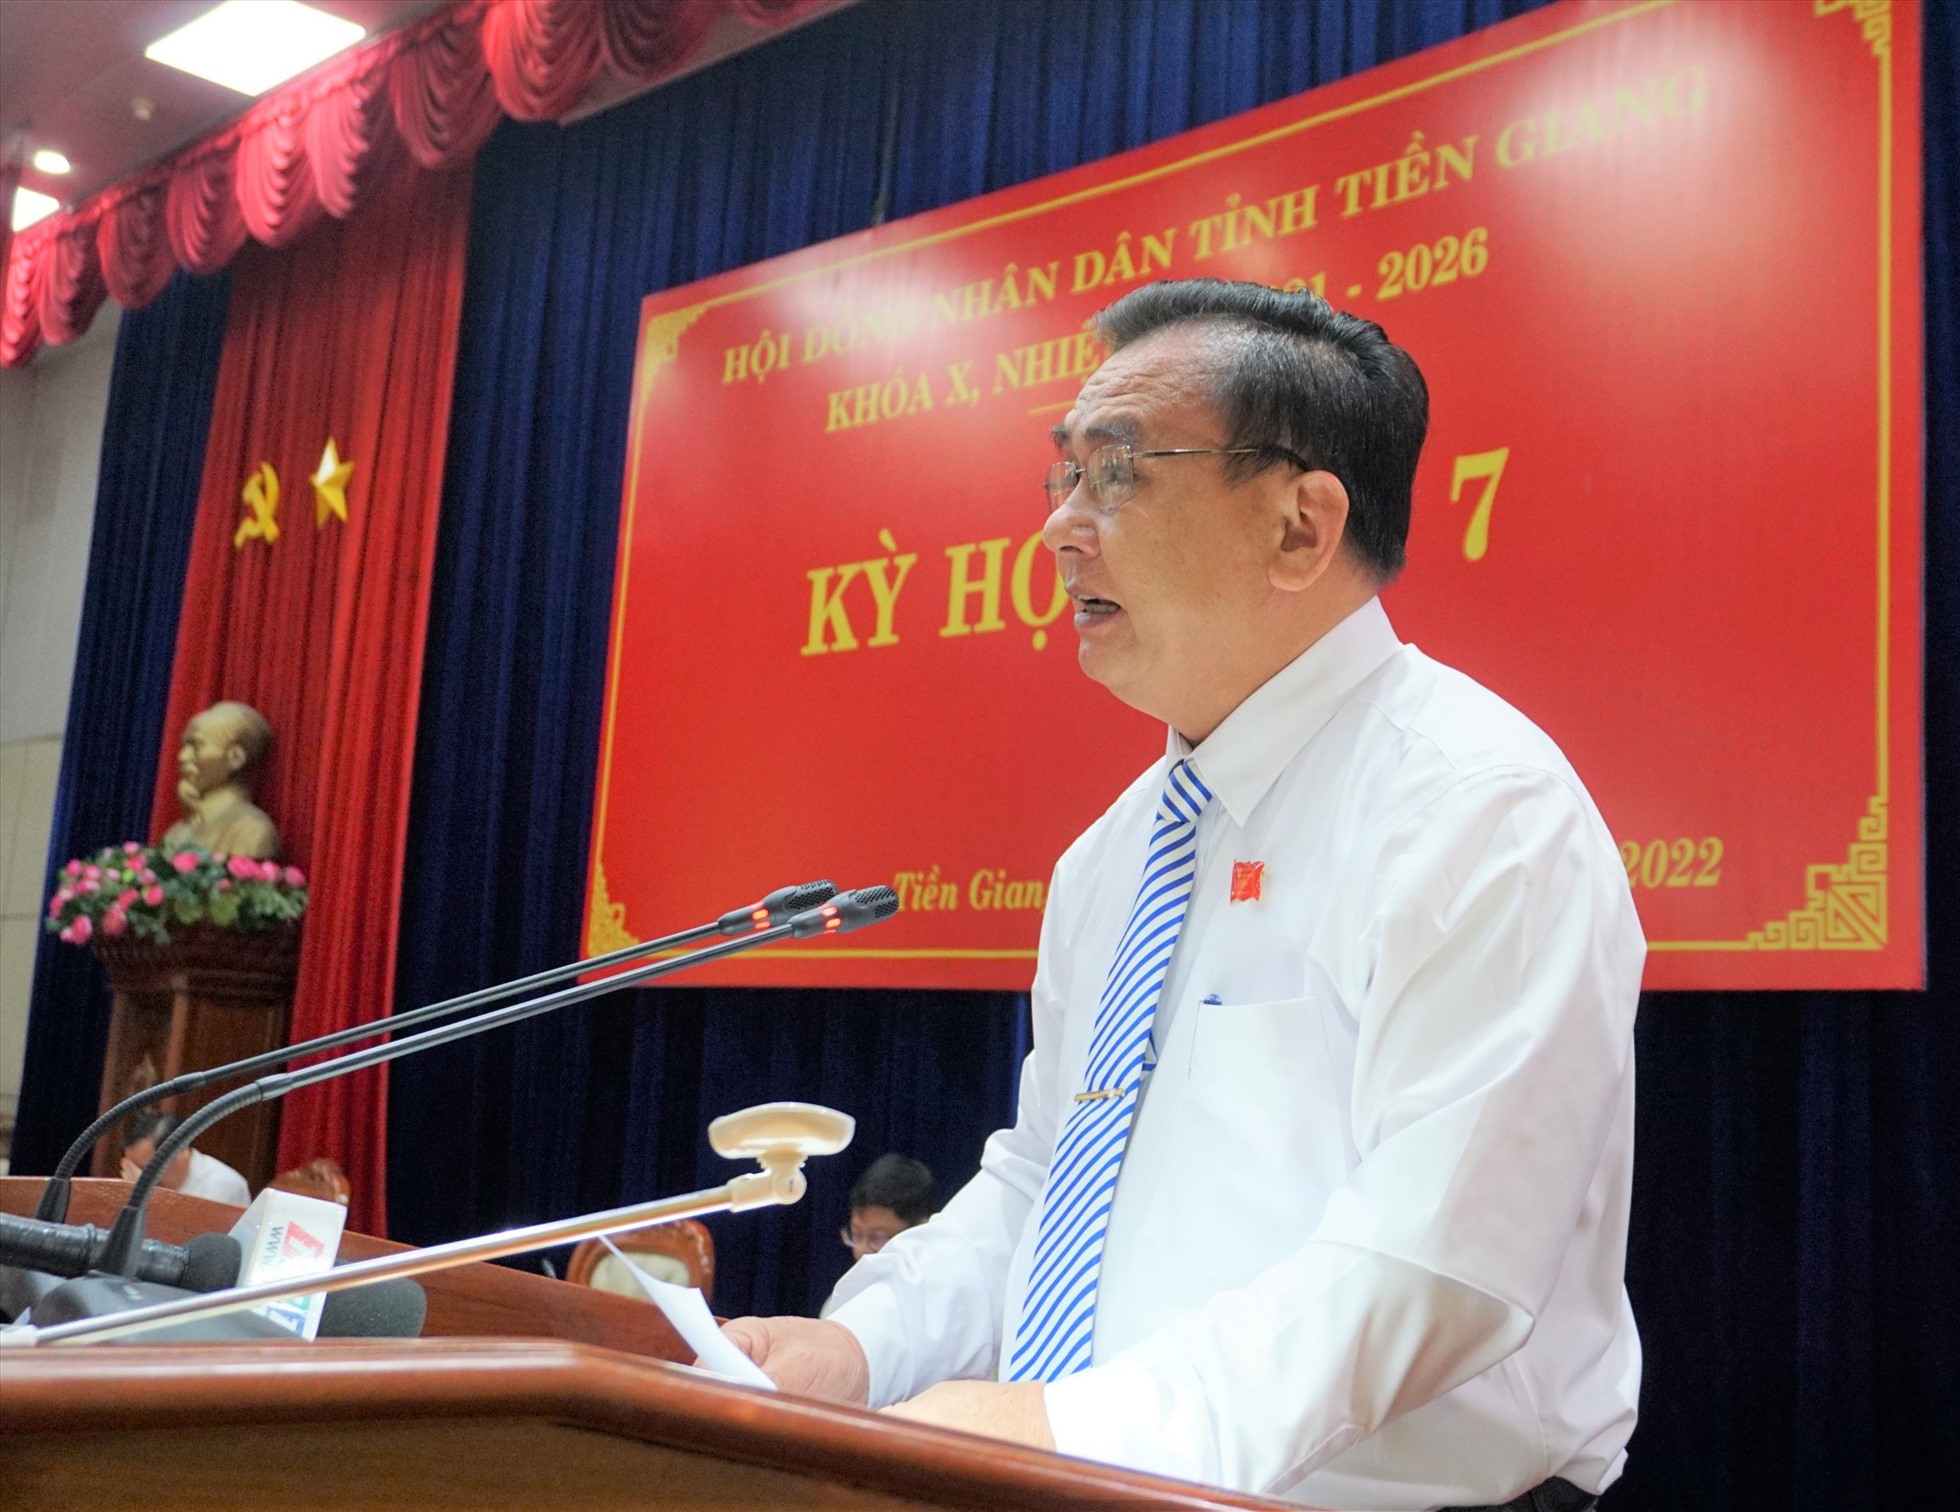 Ông Võ Văn Bình - Chủ tịch HĐND tỉnh Tiền Giang phát biểu khai mạc tại kỳ họp thứ 7 của HĐND tỉnh Tiền Giang. Ảnh: Thu Hoài.